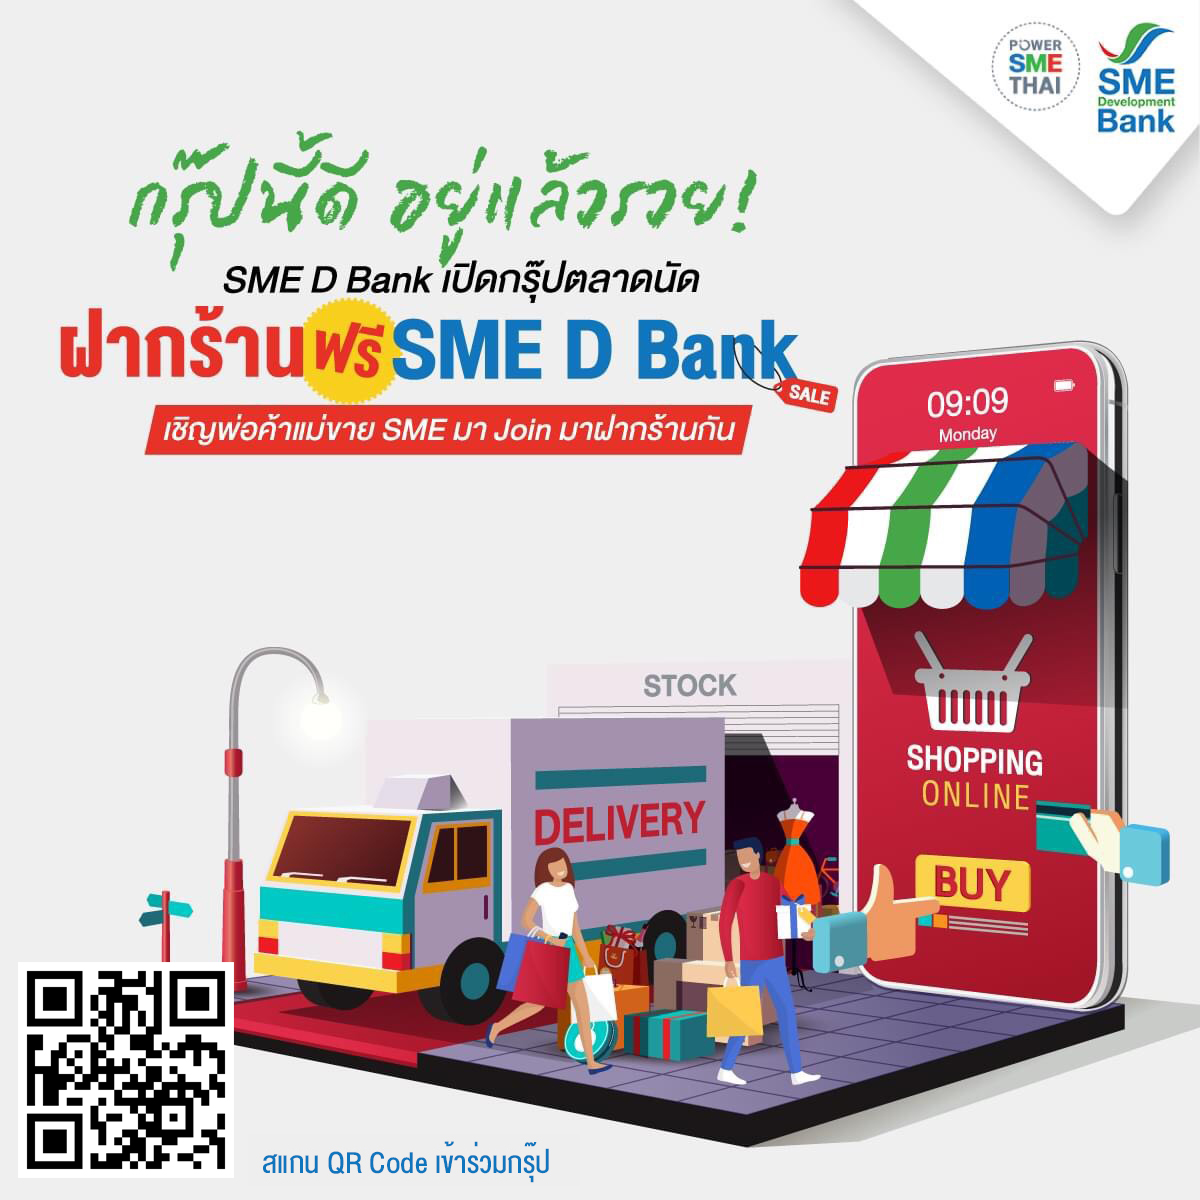 ธพว.กดปุ่มดีเดย์ตลาดนัดออนไลน์ ฝากร้านฟรี SME D Bank สร้างสังคมธุรกิจผู้ประกอบการไทยเพิ่มรายได้ ซื้อขายคล่อง